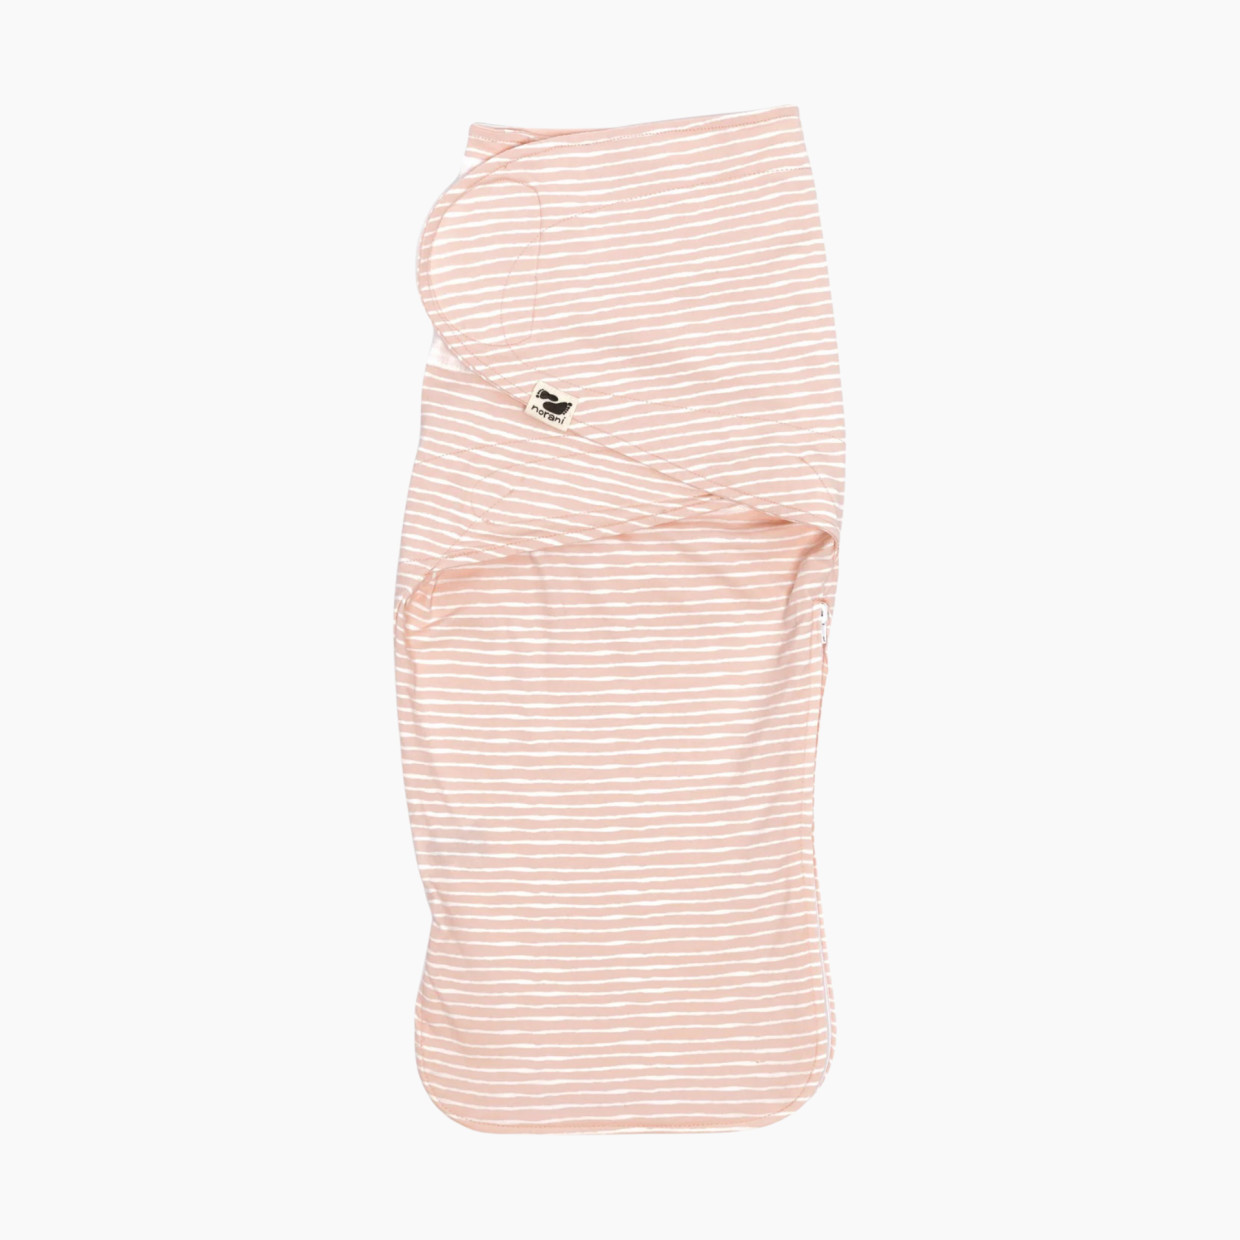 Norani Organic Snugababe Swaddle Sleep Pod - Pink And White Stripes.